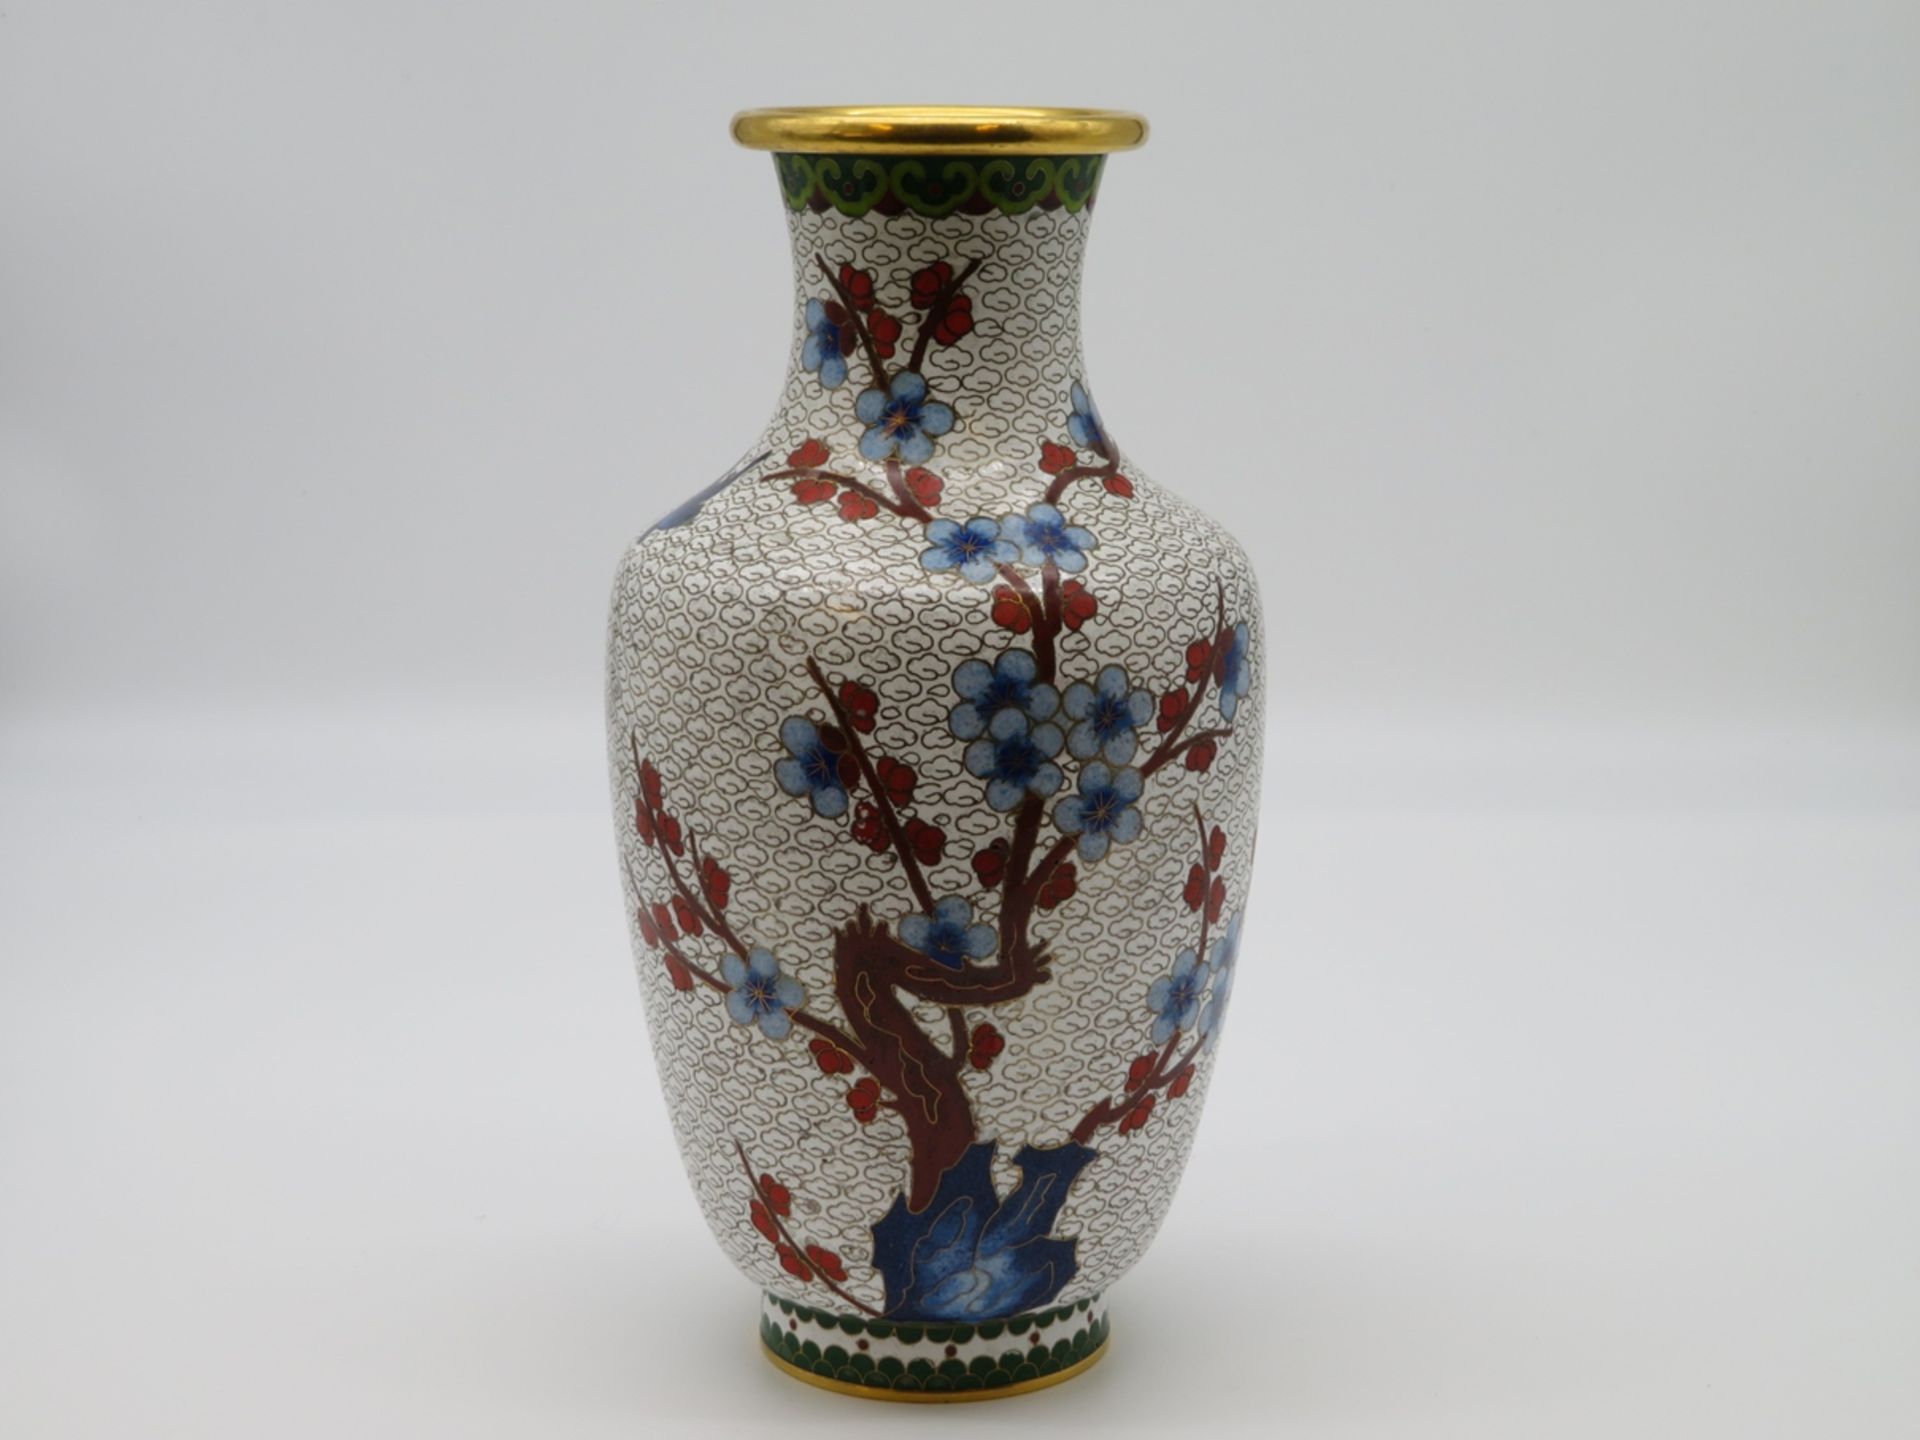 Cloisonné Vase, China, farbiger Zellenschmelz, 20. Jahrhundert, h 26 cm, d 13 cm.